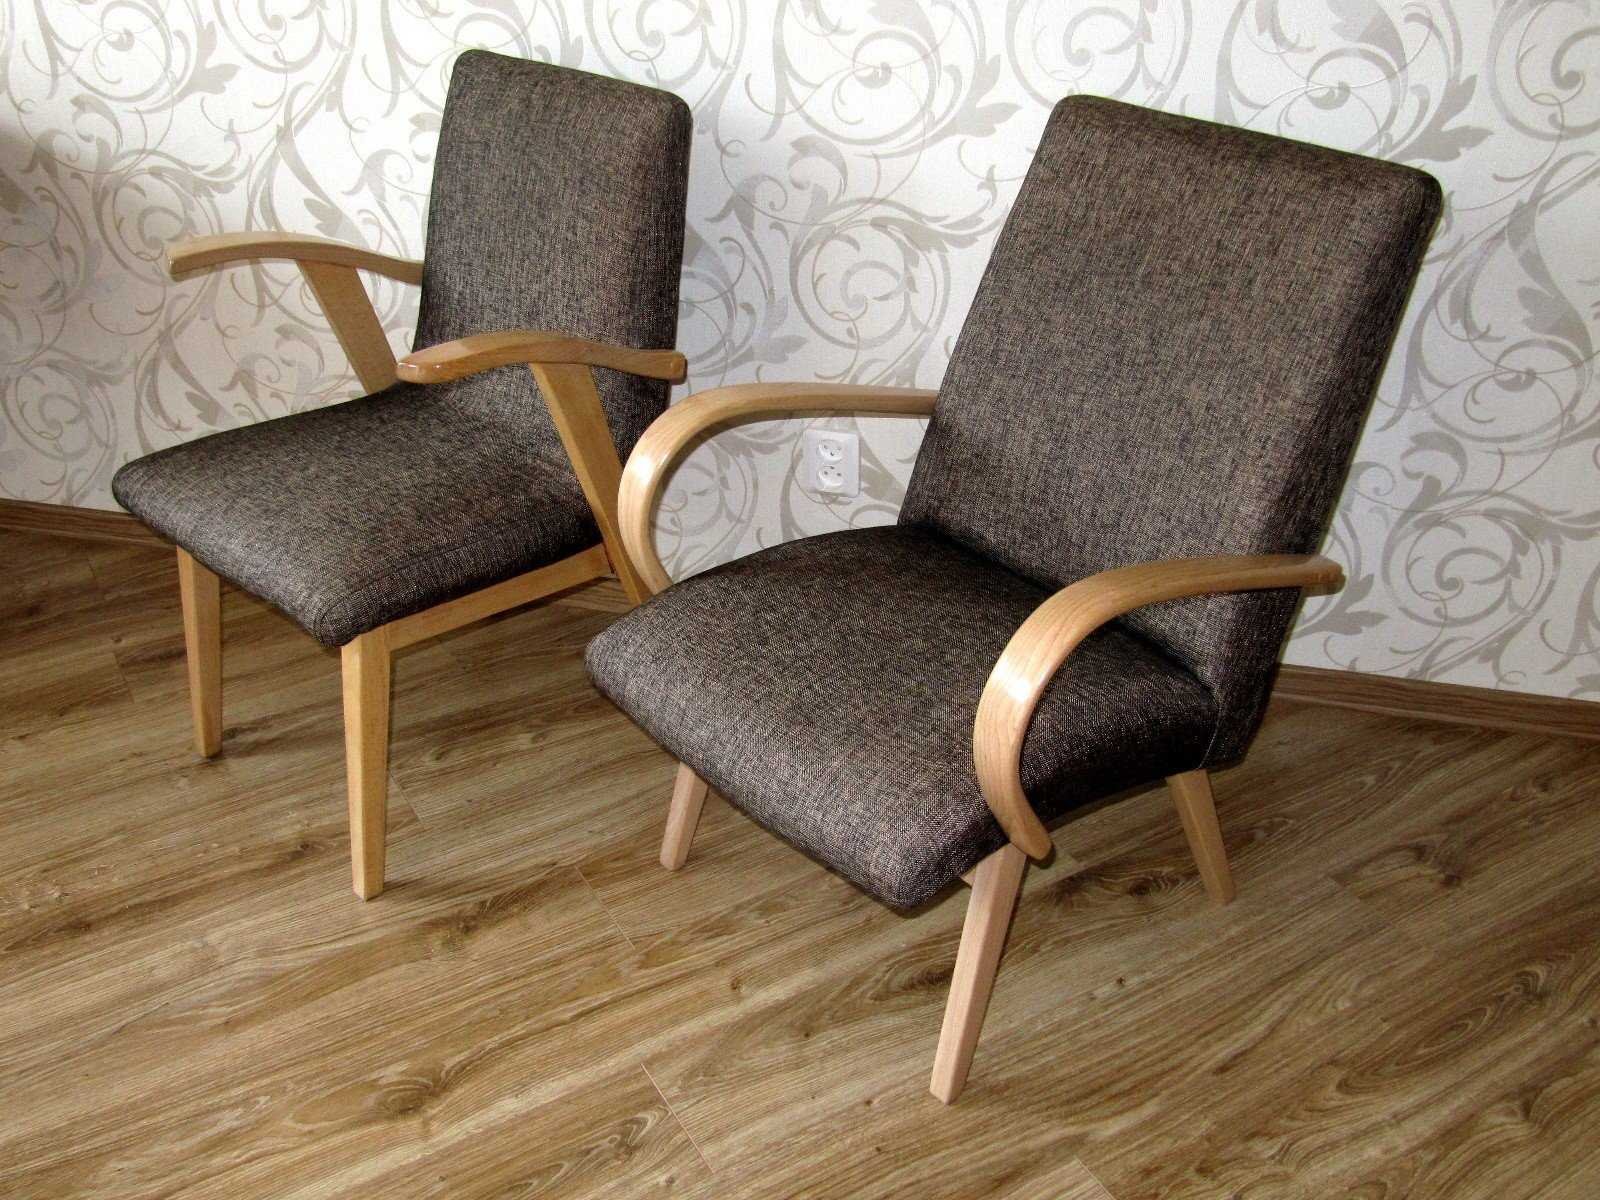 Реставрация деревянного кресла. Кресло Миер Топольчаны. Старое советское кресло. Кресло с деревянными подлокотниками. Реставрируем старое кресло.